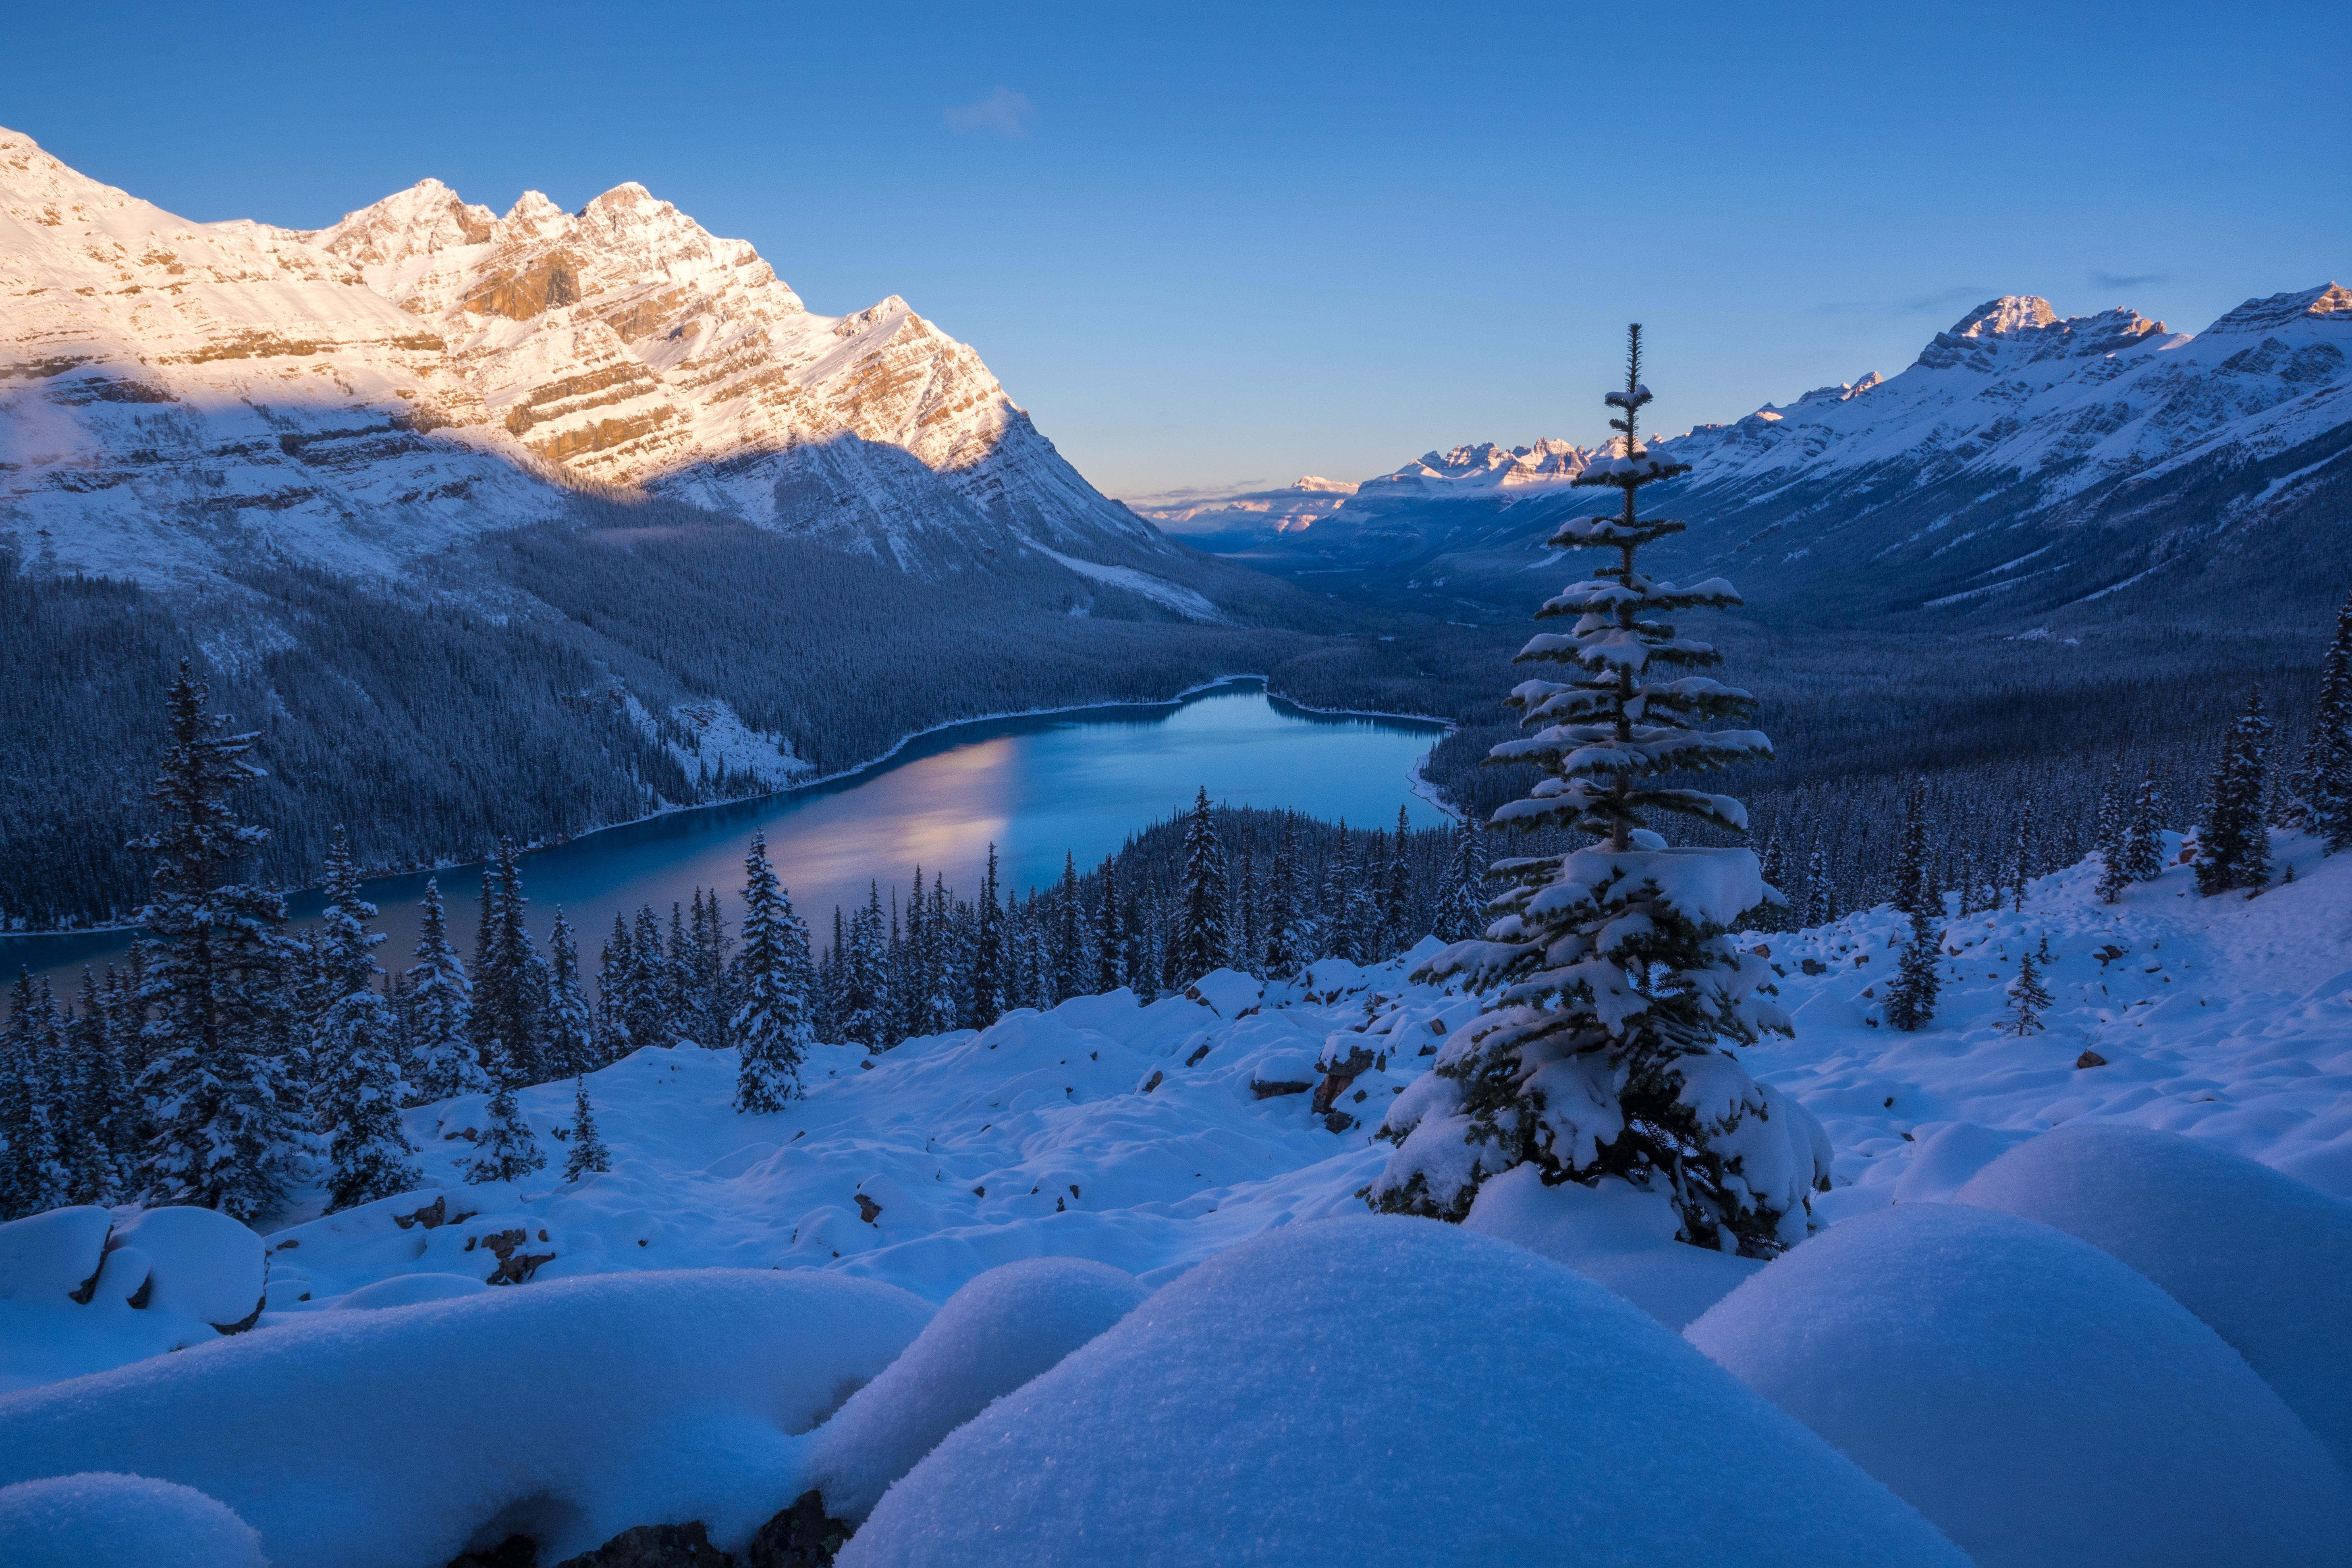 Wallpapers landscape winter Banff National Park on the desktop